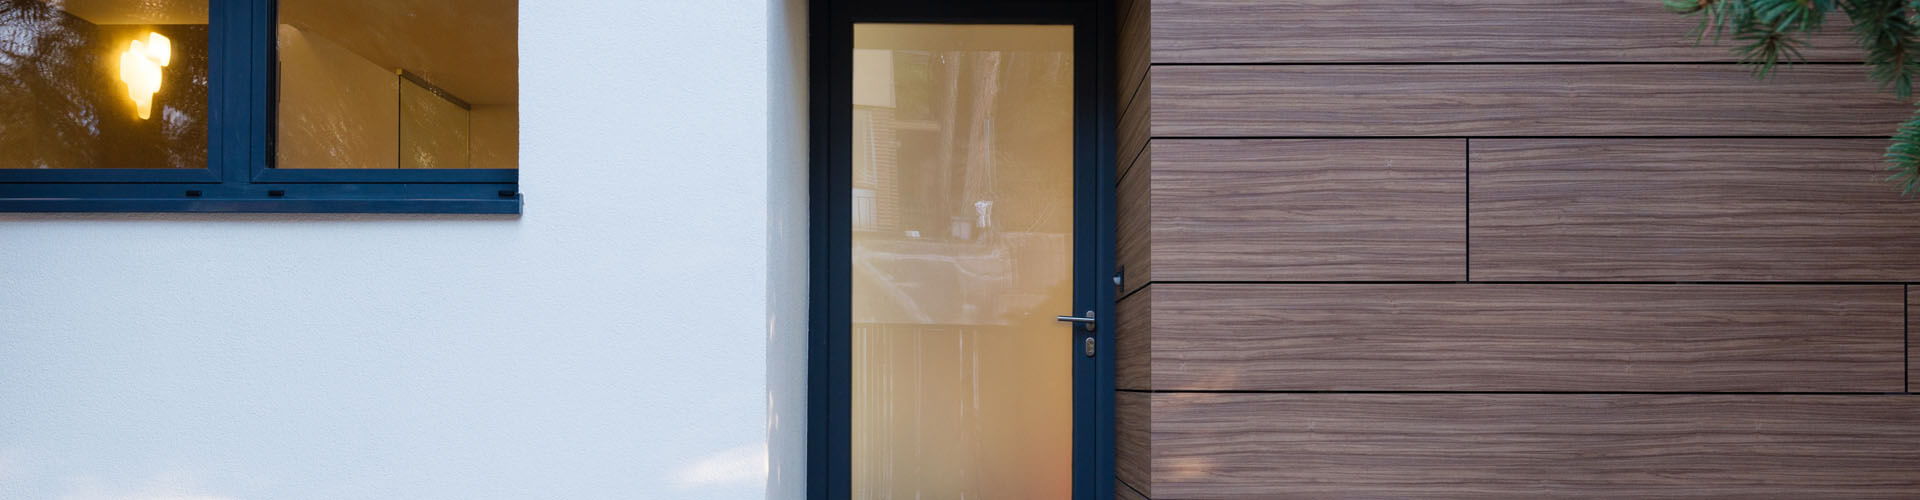 Porte d'entrée vitrée, fenêtres PVC et façade en bois